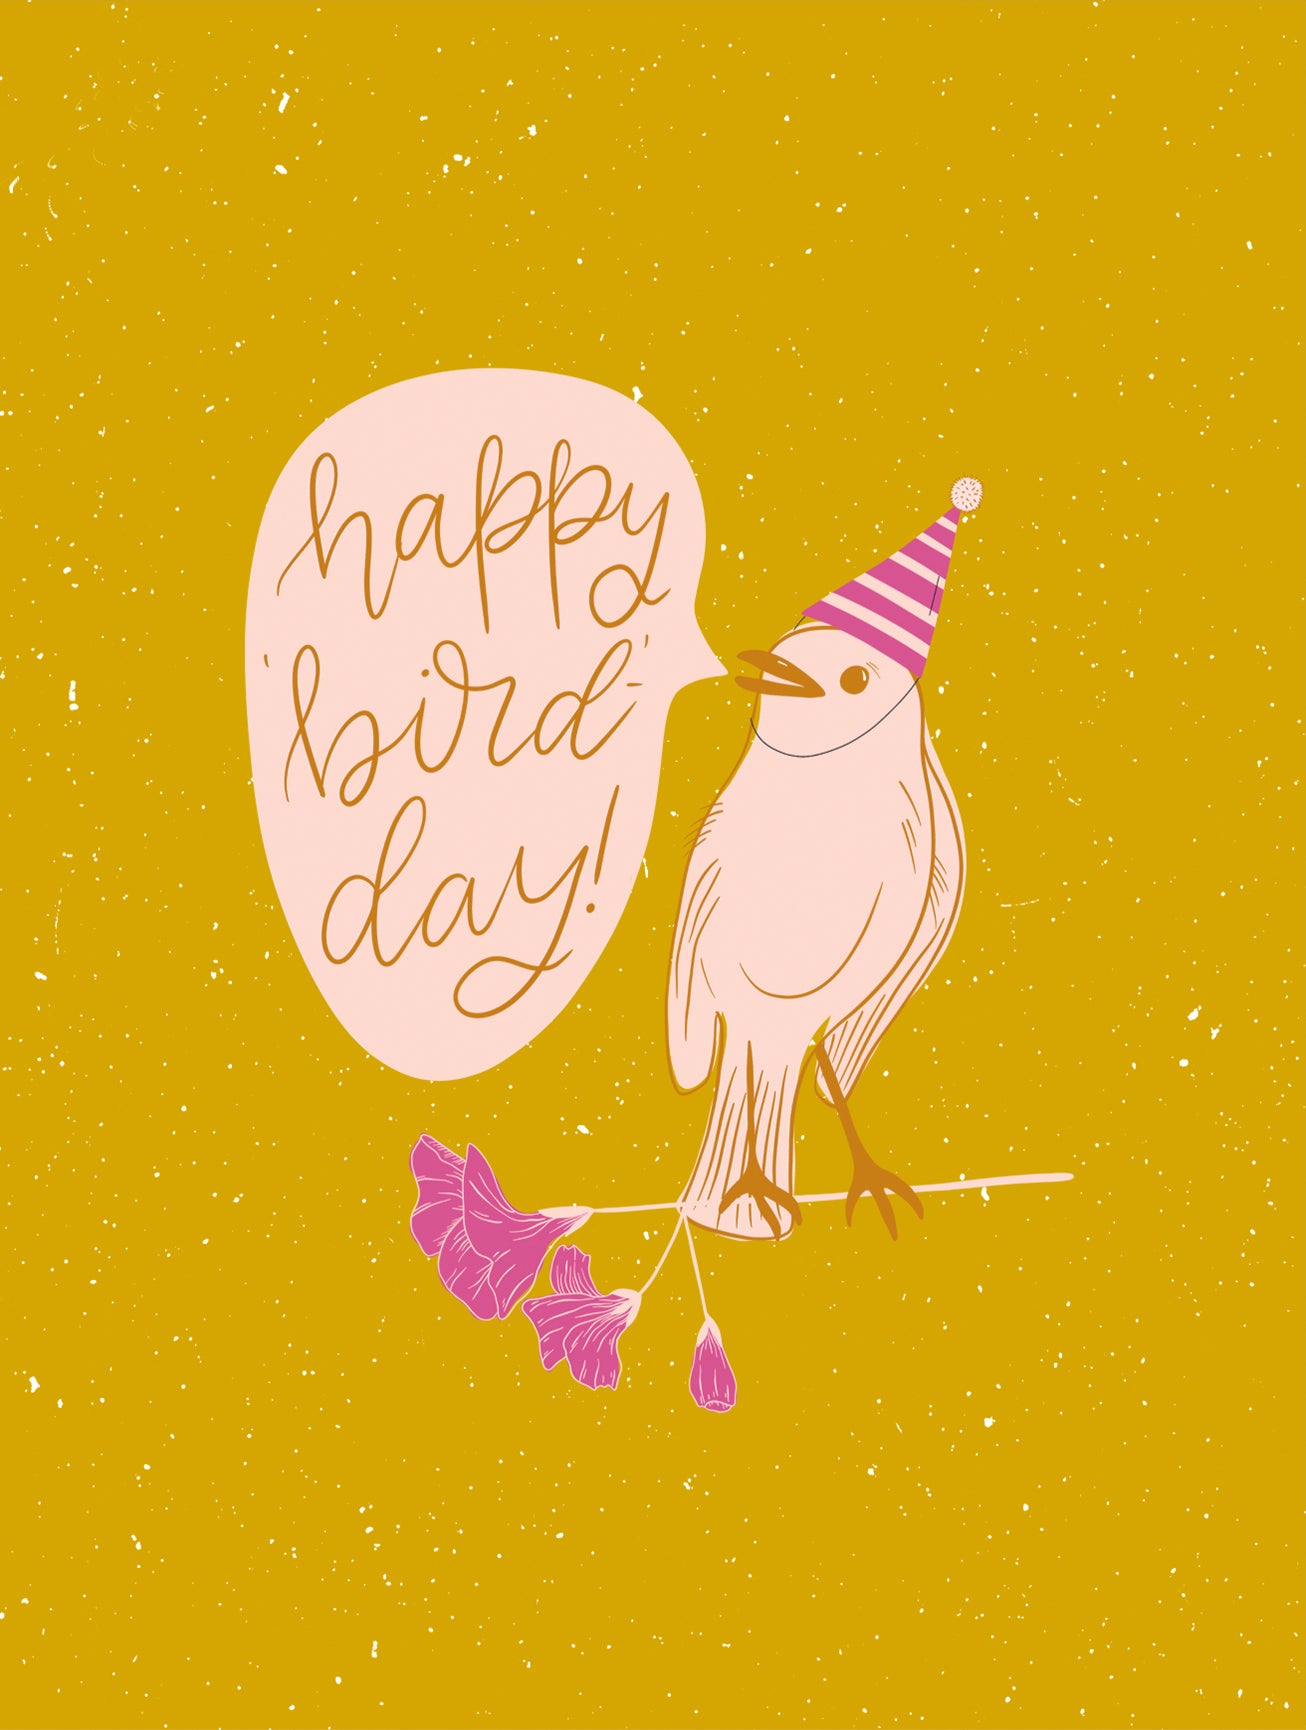 Happy Bird-Day Birthday Card